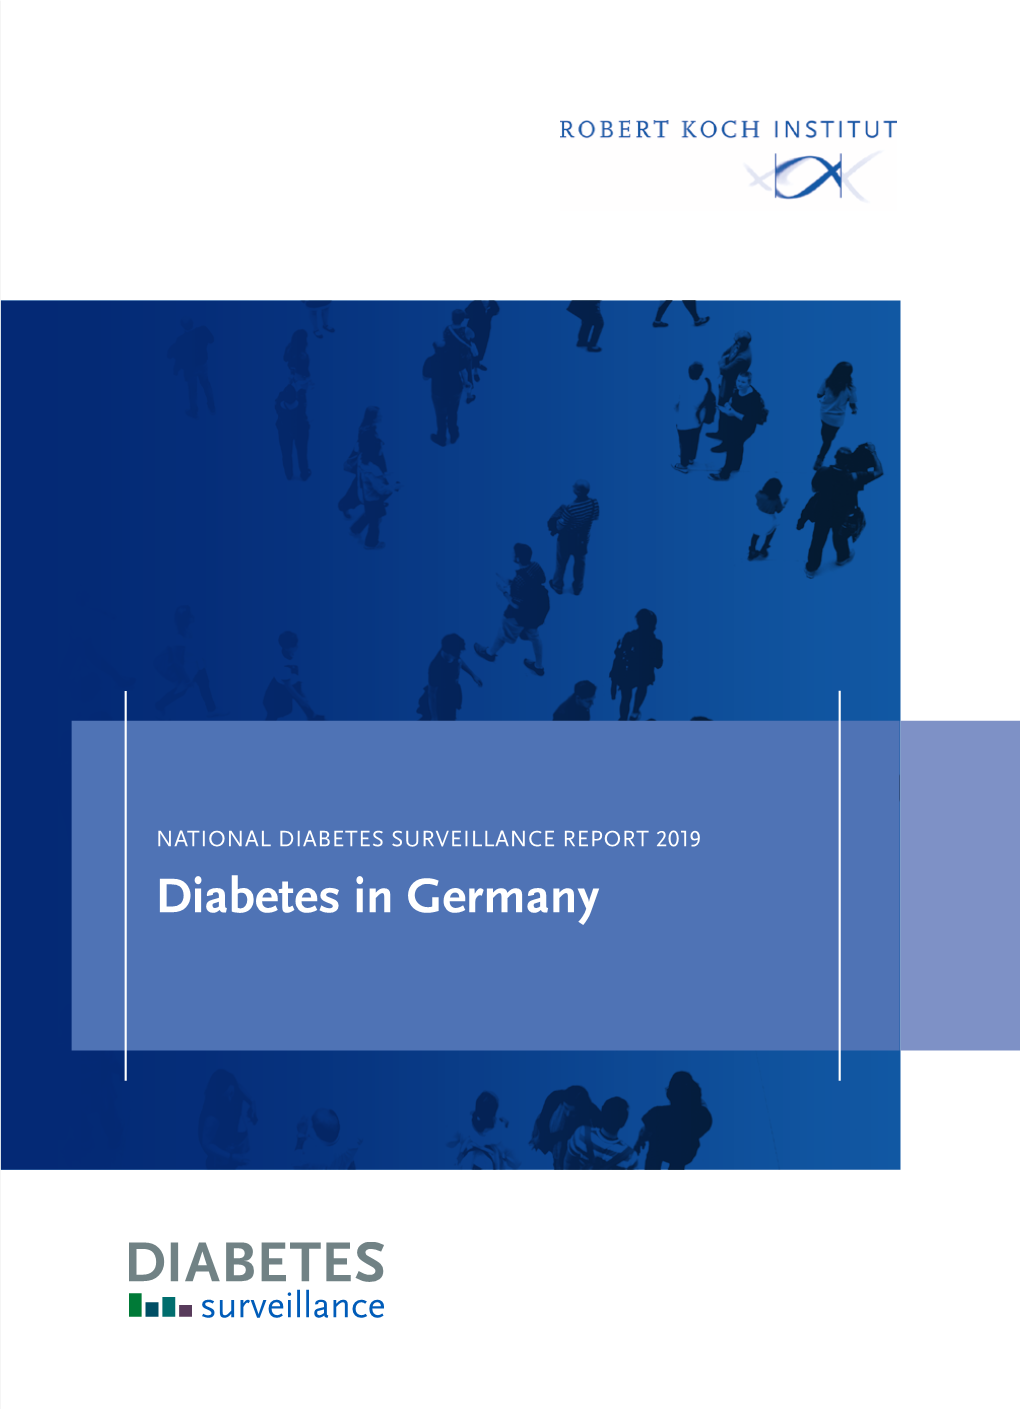 Diabetes in Germany